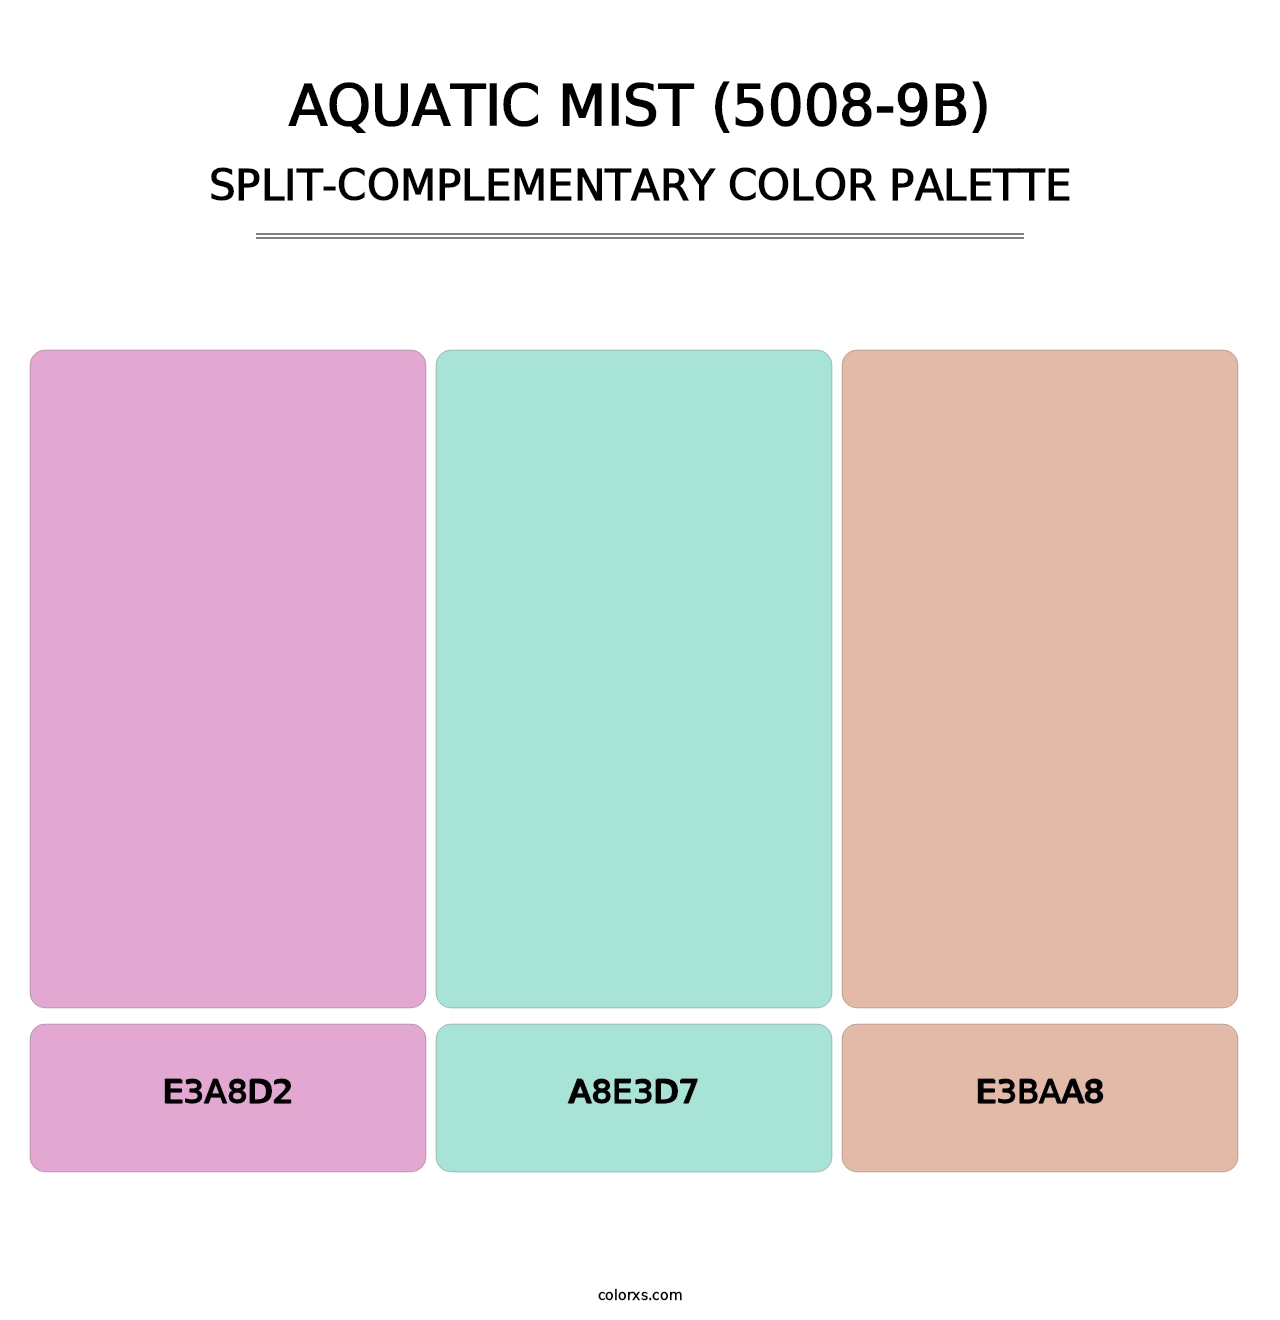 Aquatic Mist (5008-9B) - Split-Complementary Color Palette